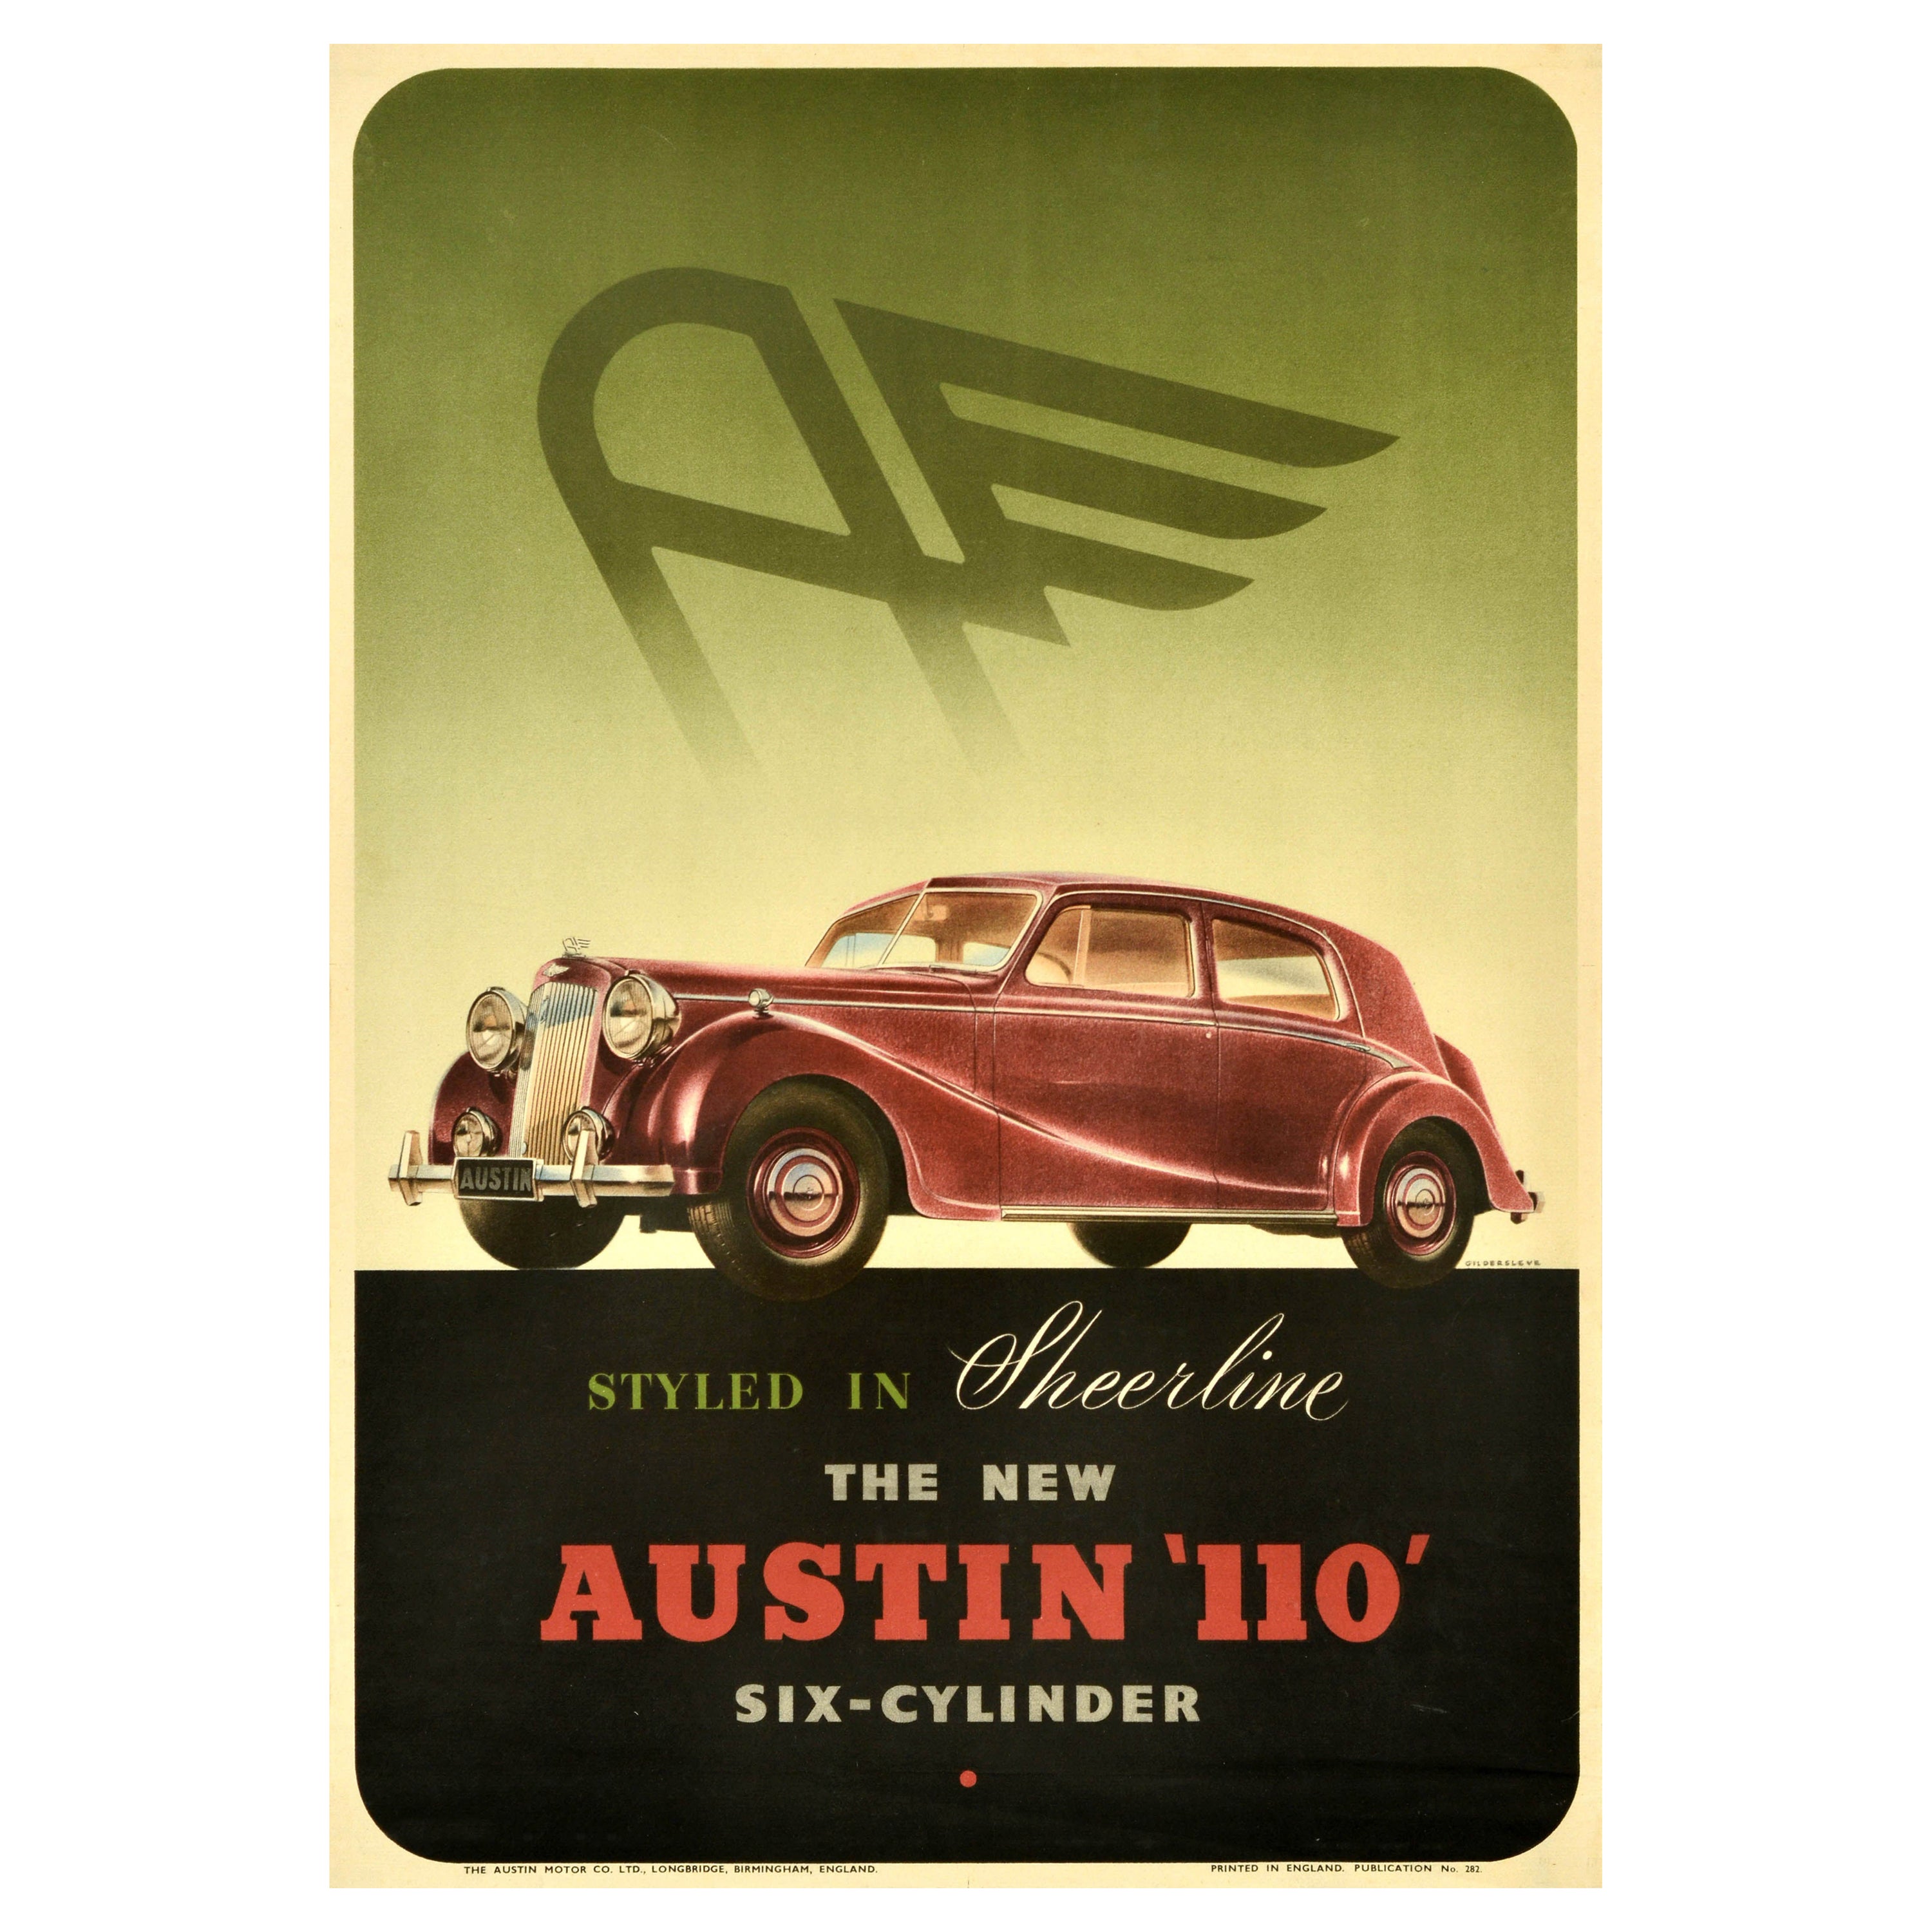 Original Vintage Auto-Werbeplakat Austin 110, durchsichtiges Vintage-Auto mit sechs Zylindern im Angebot